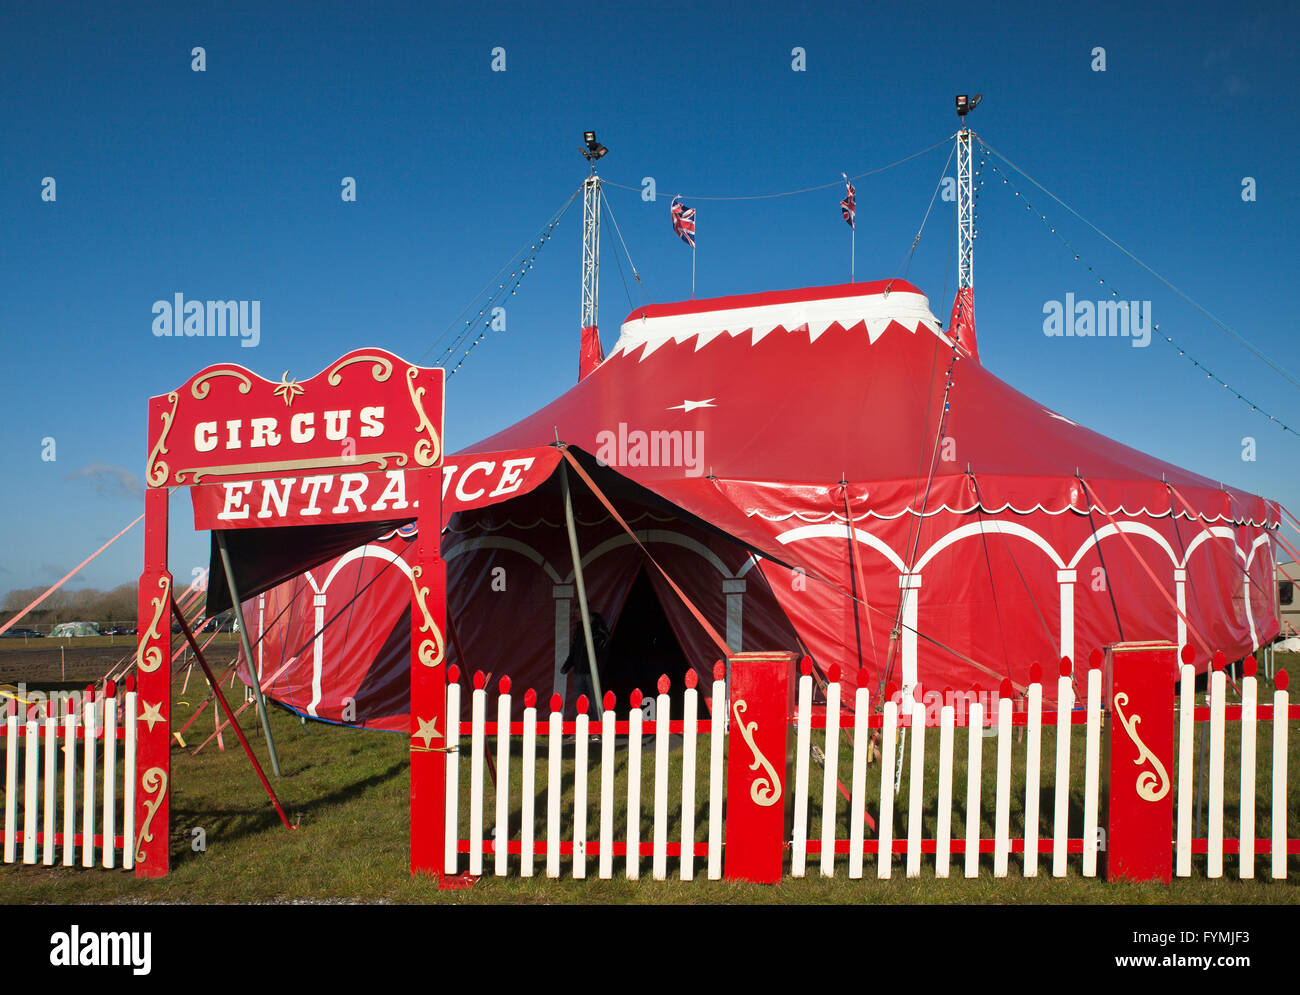 Pinders circus tent. Stock Photo